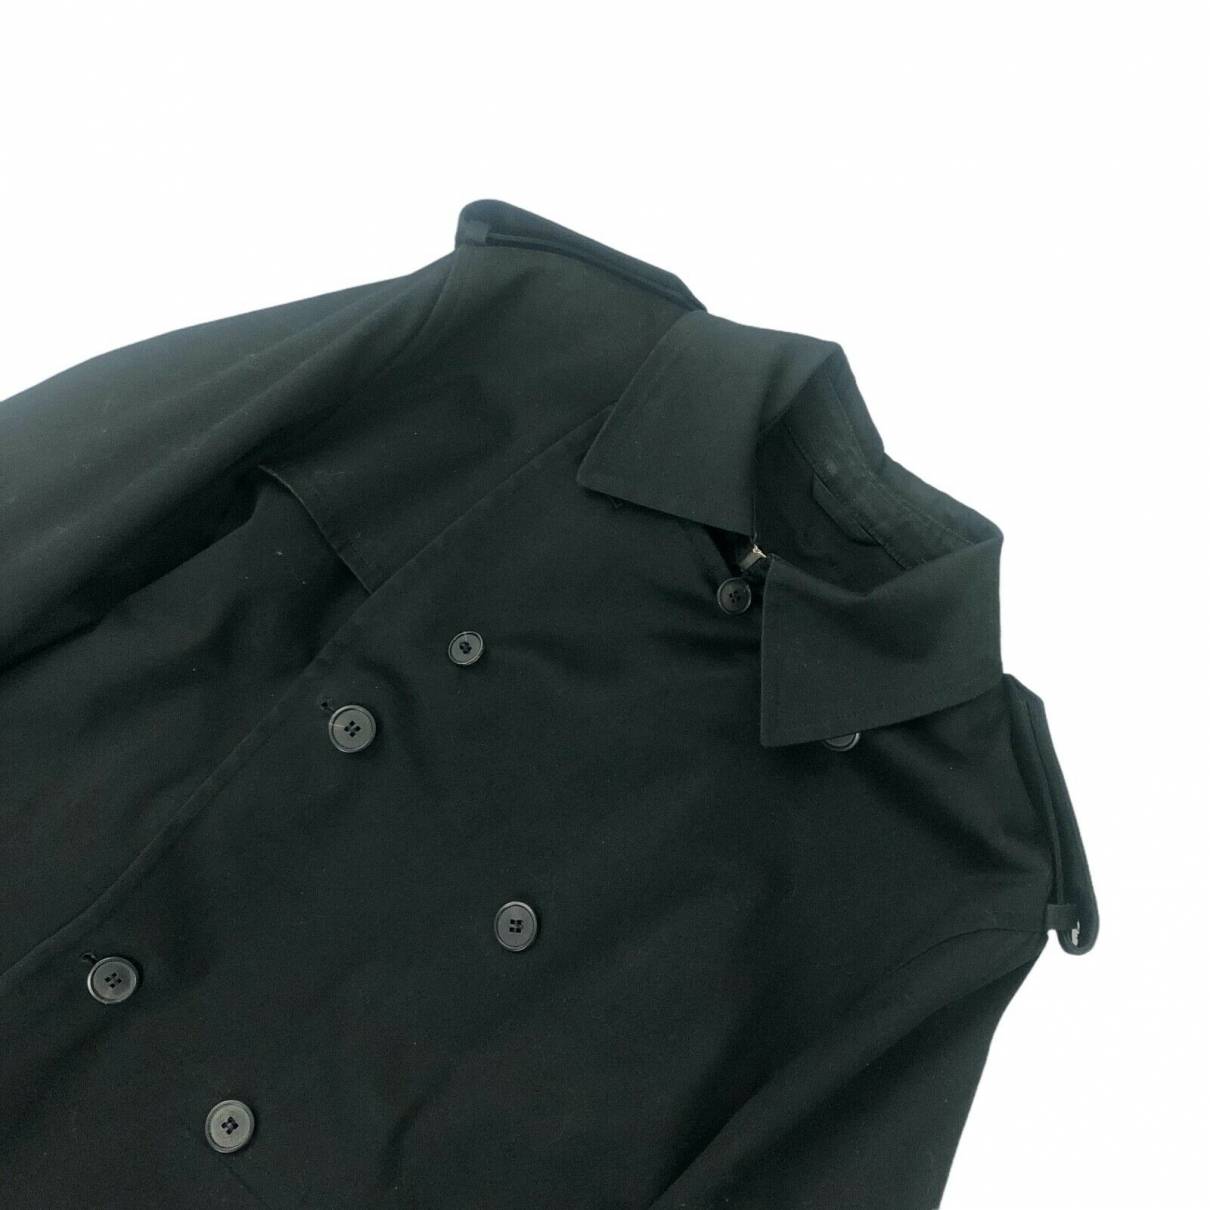 Louis Vuitton - Authenticated Coat - Cotton Black Plain for Men, Good Condition